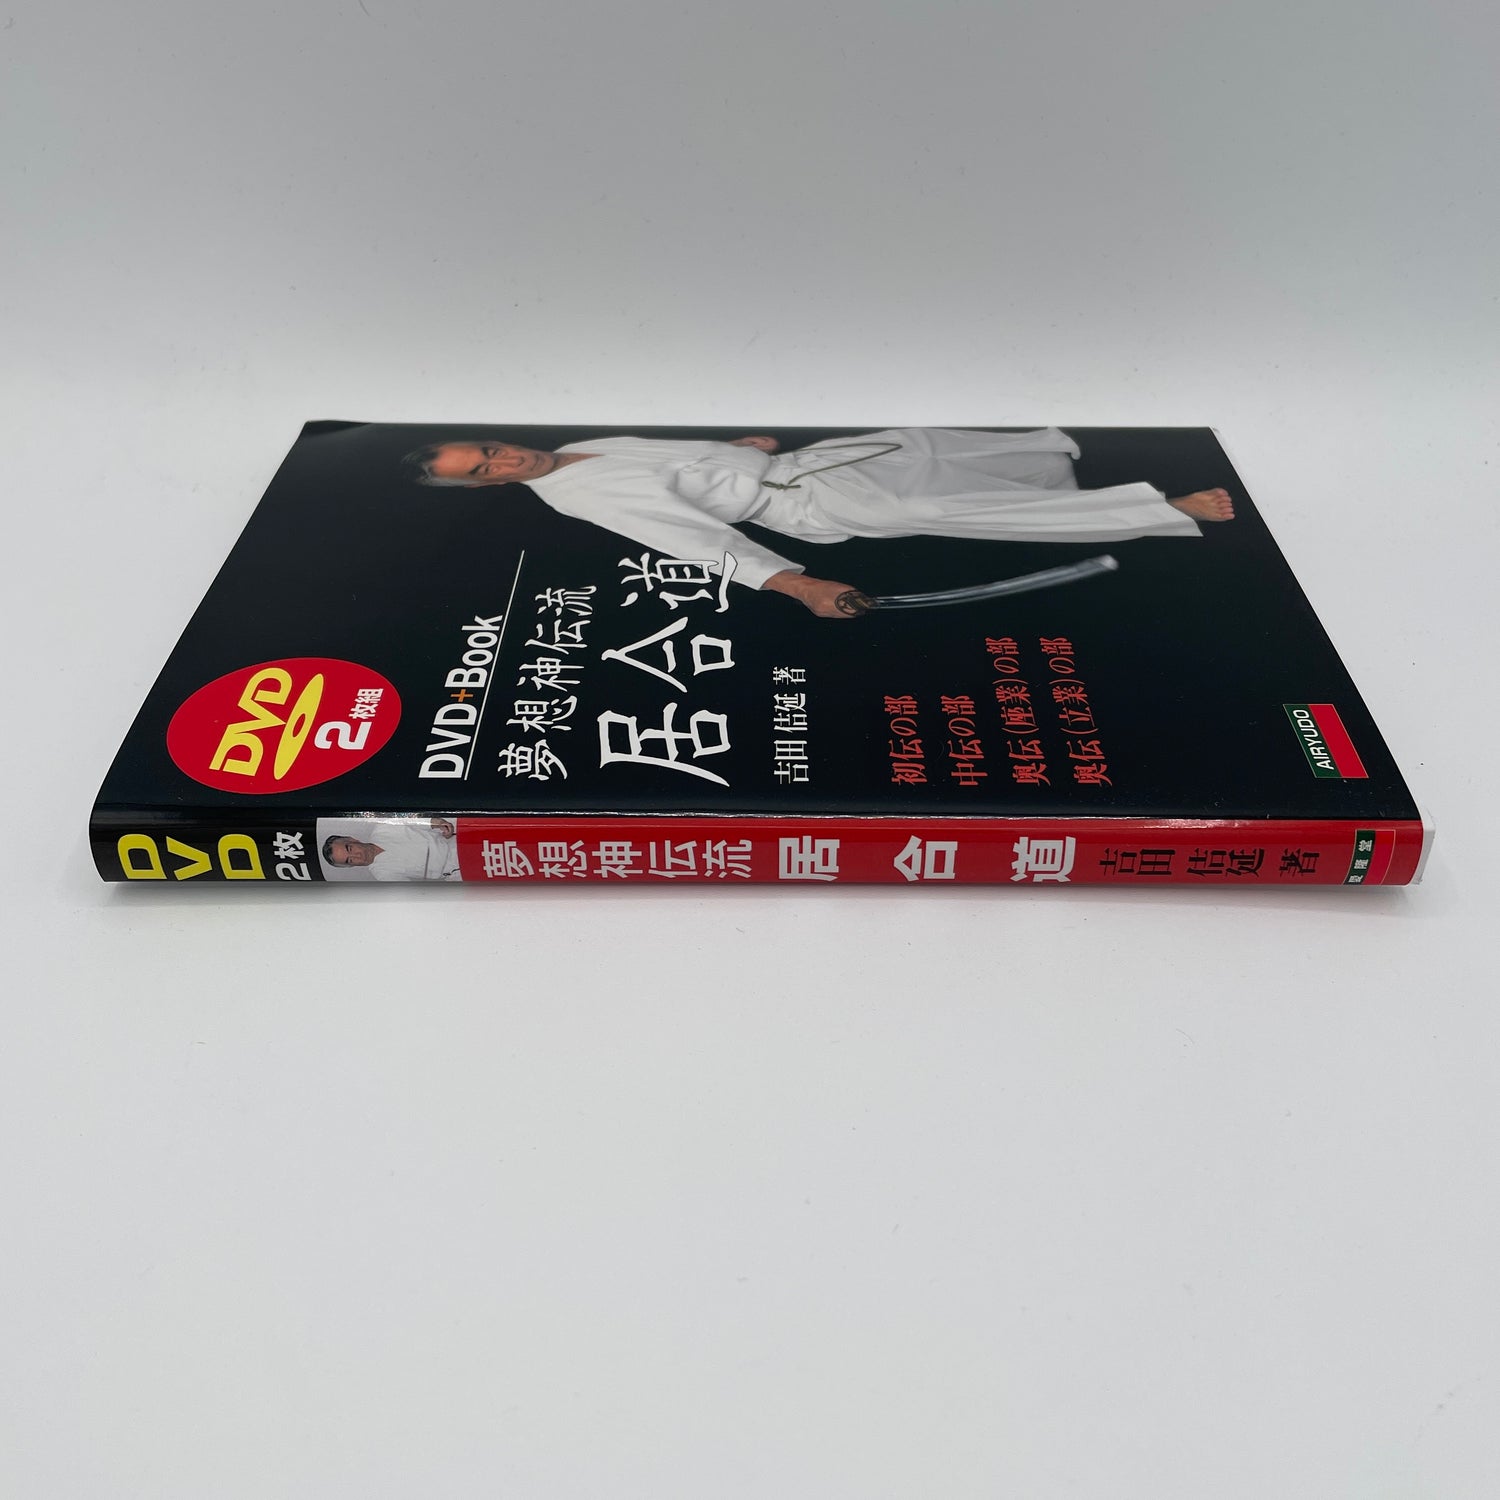 Muso Shinden Ryu Iaido Libro y DVD de Yoshinobu Yoshida